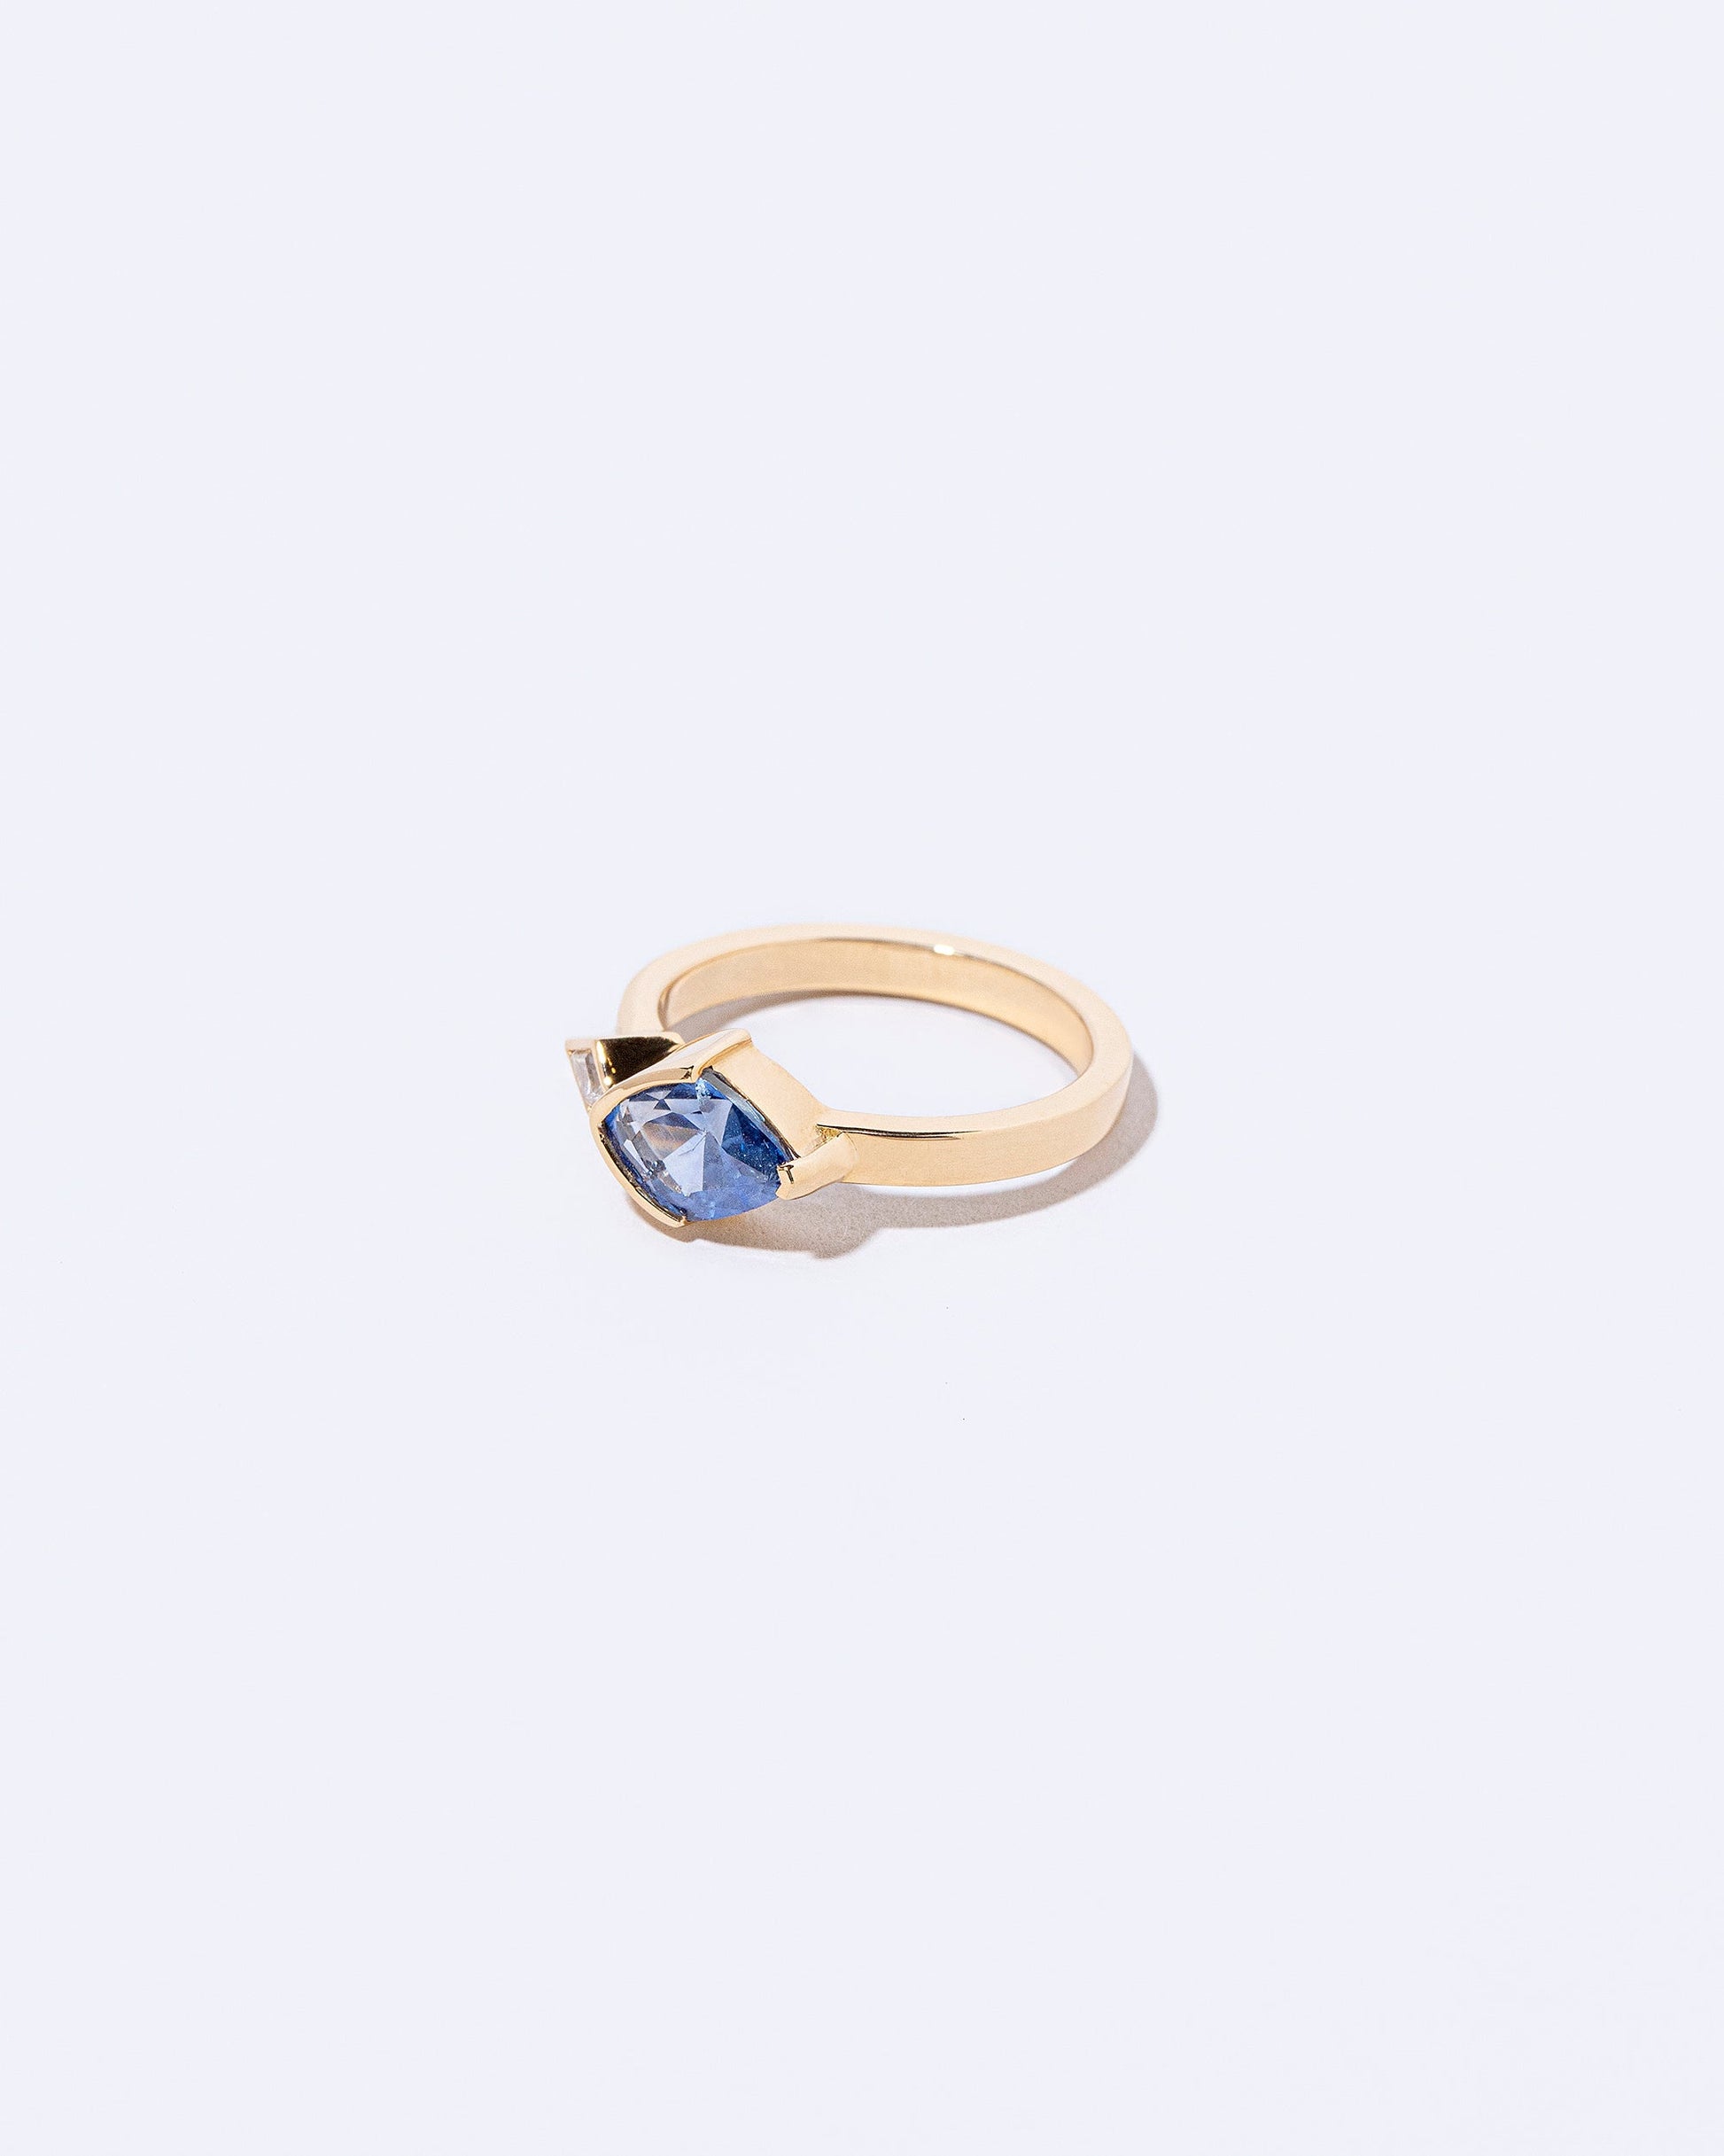  Alder's Ring on light color background.